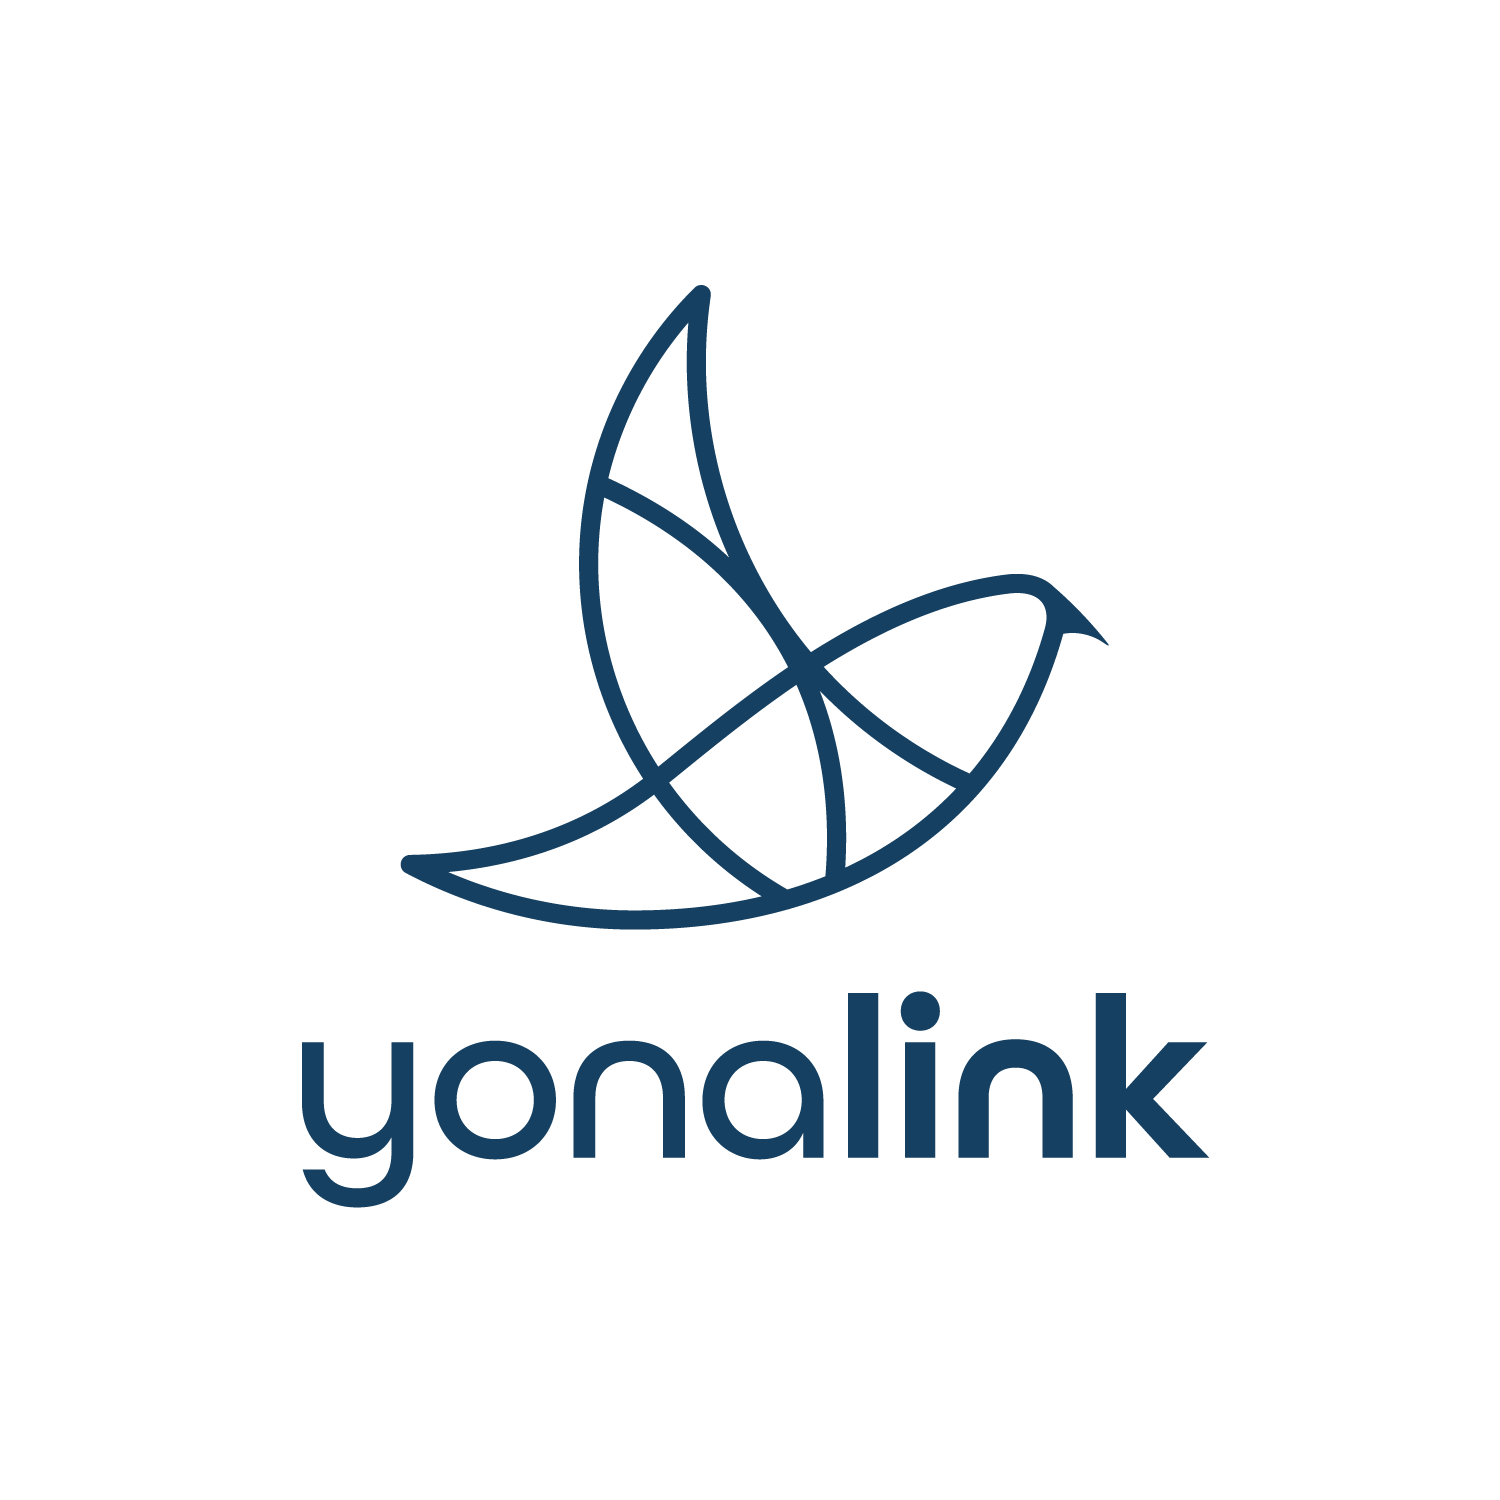 Yonalink logo